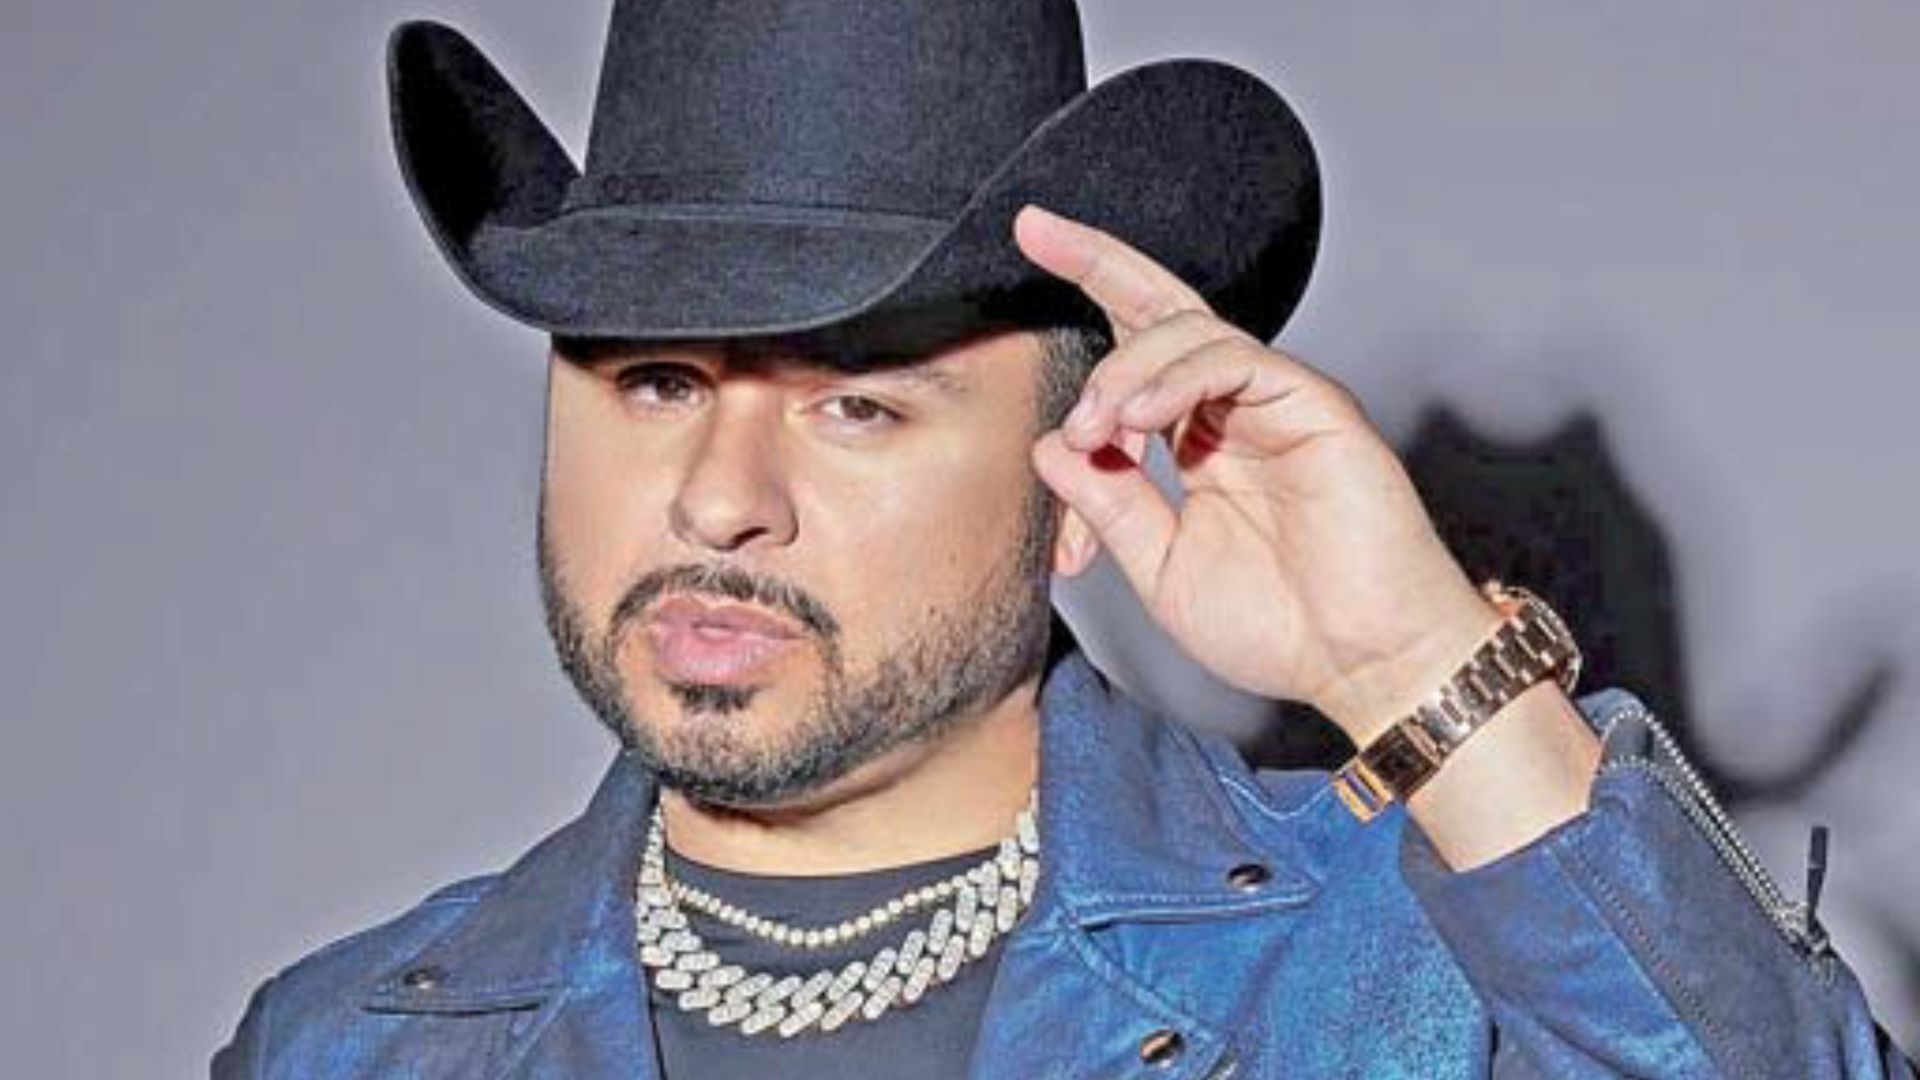 El cantante de corridos Larry Hernández anunció la cancelación de su concierto, luego de que fueran arrojados supuestos artefactos explosivos, al sitio donde sería su presentación en Tijuana.